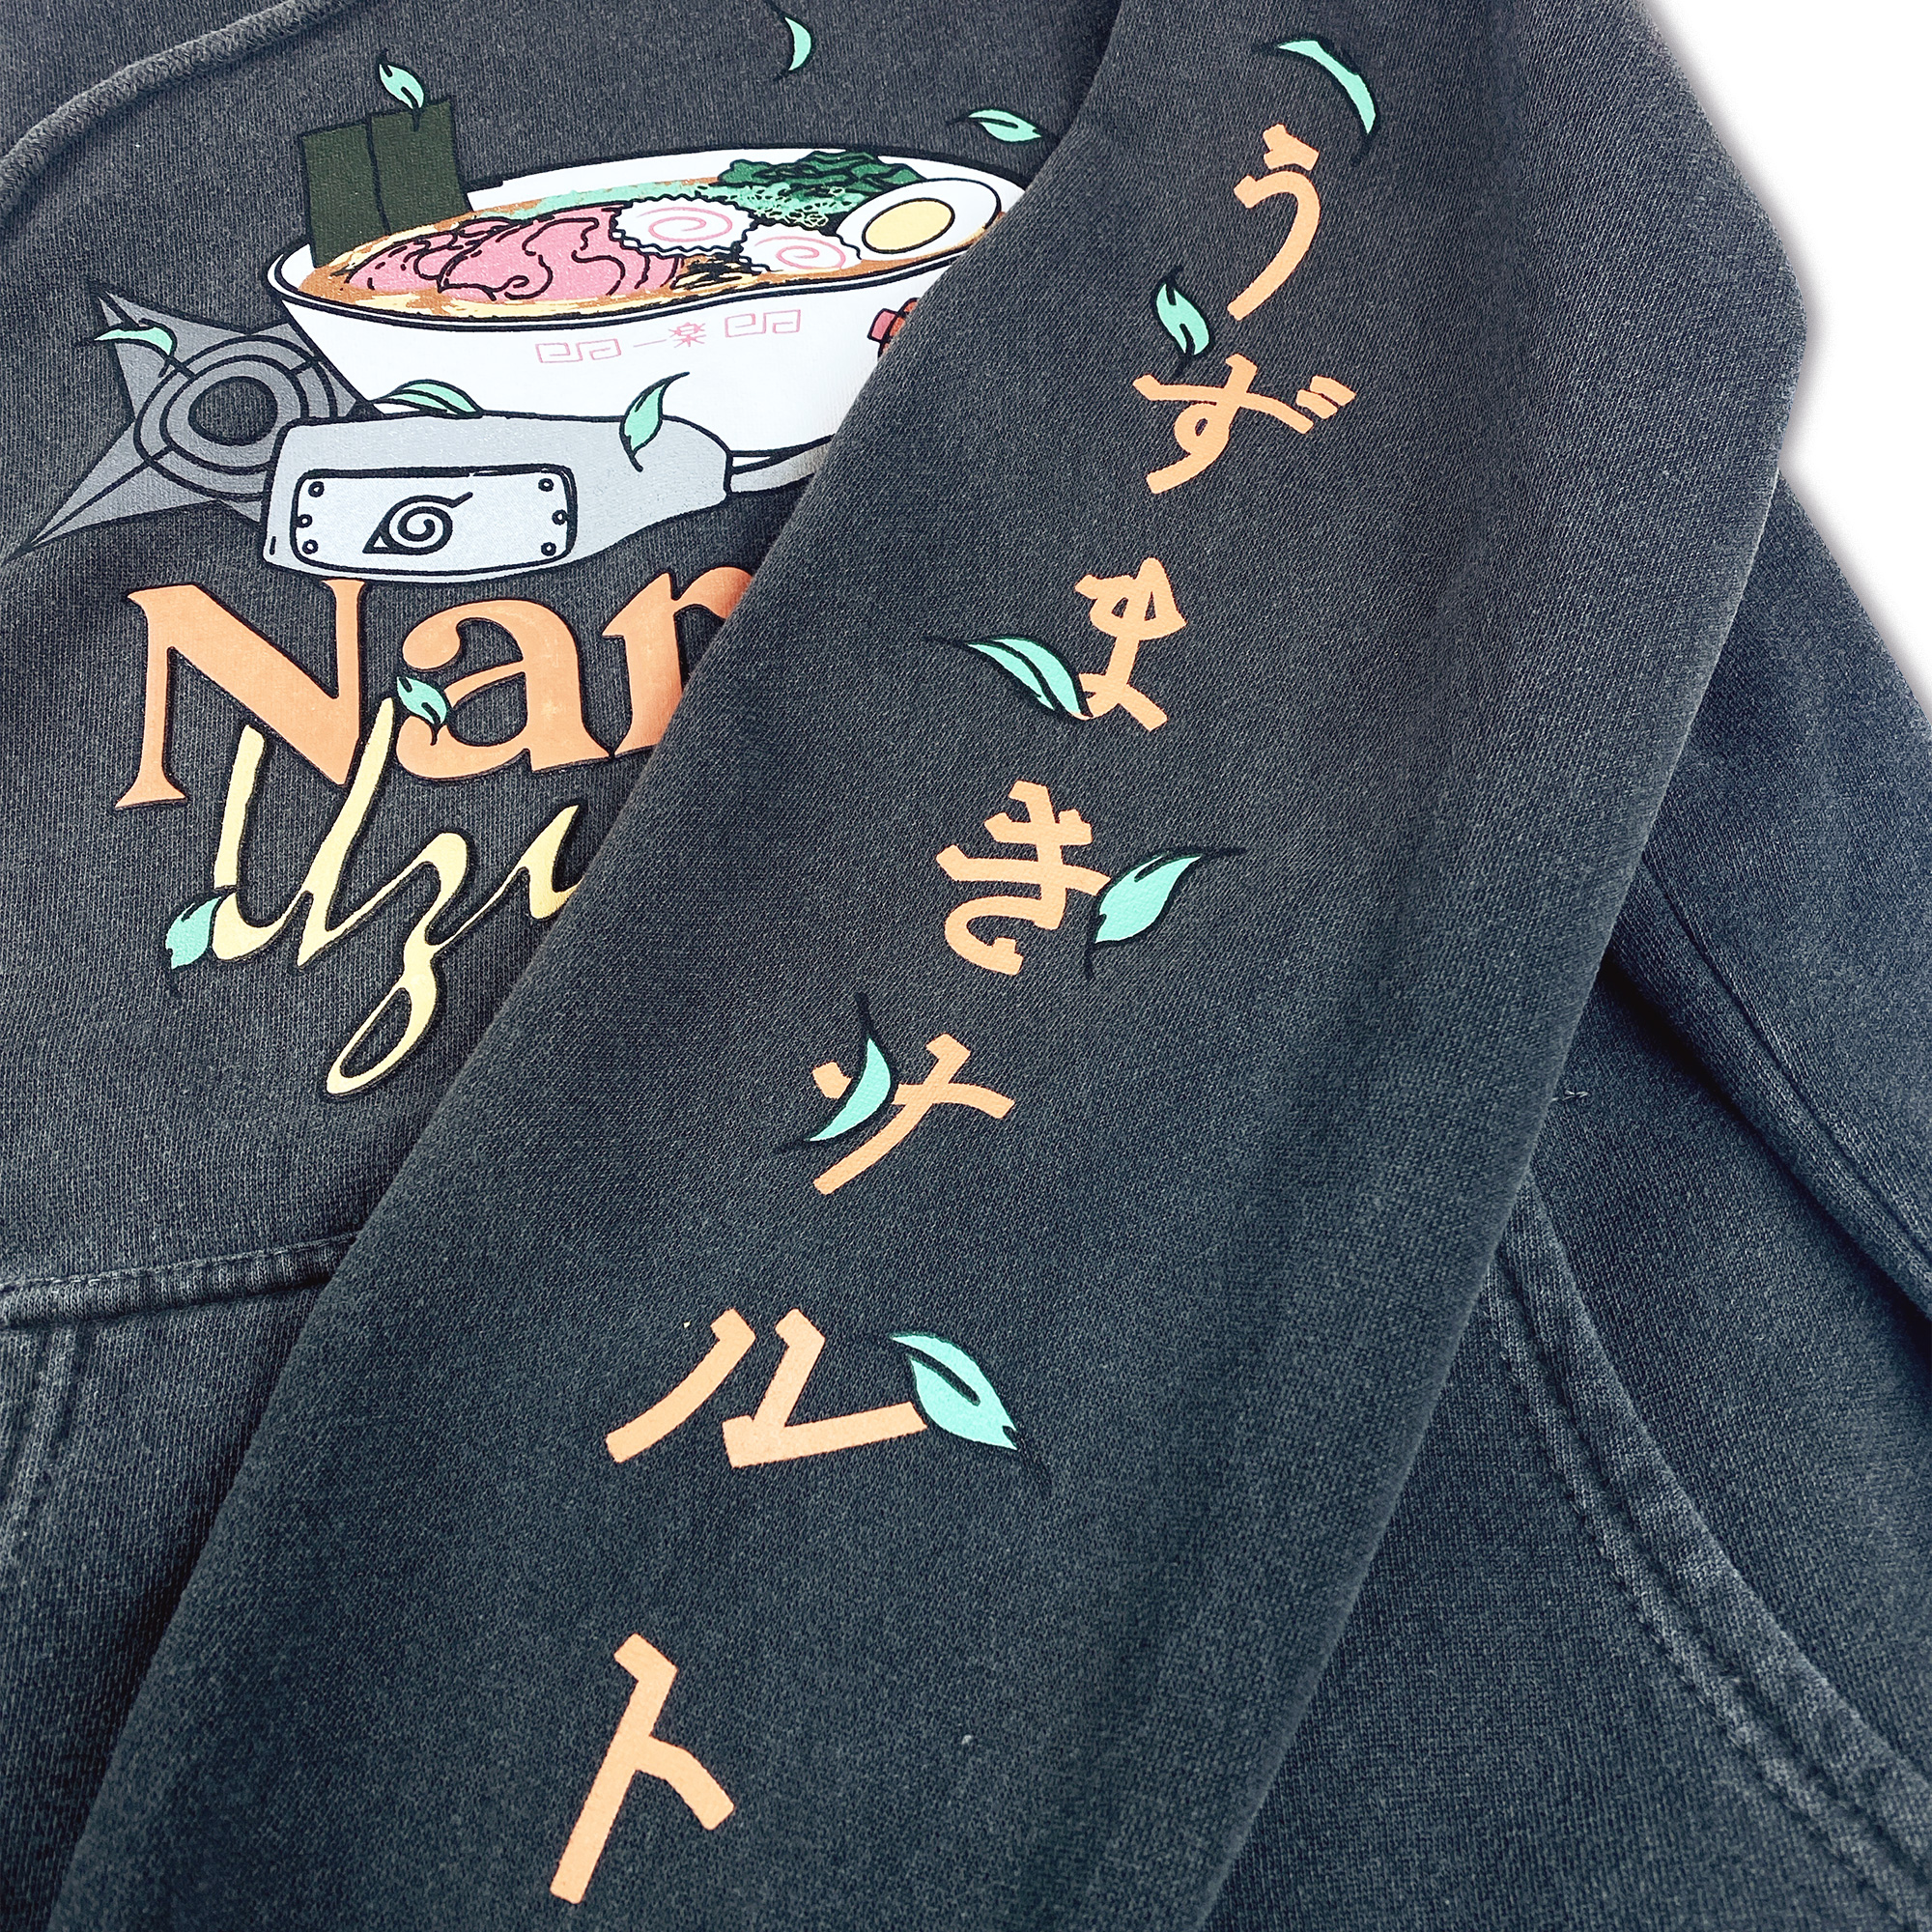 SWEATSHIRT NARUTO SHIPPUDEN - Cru